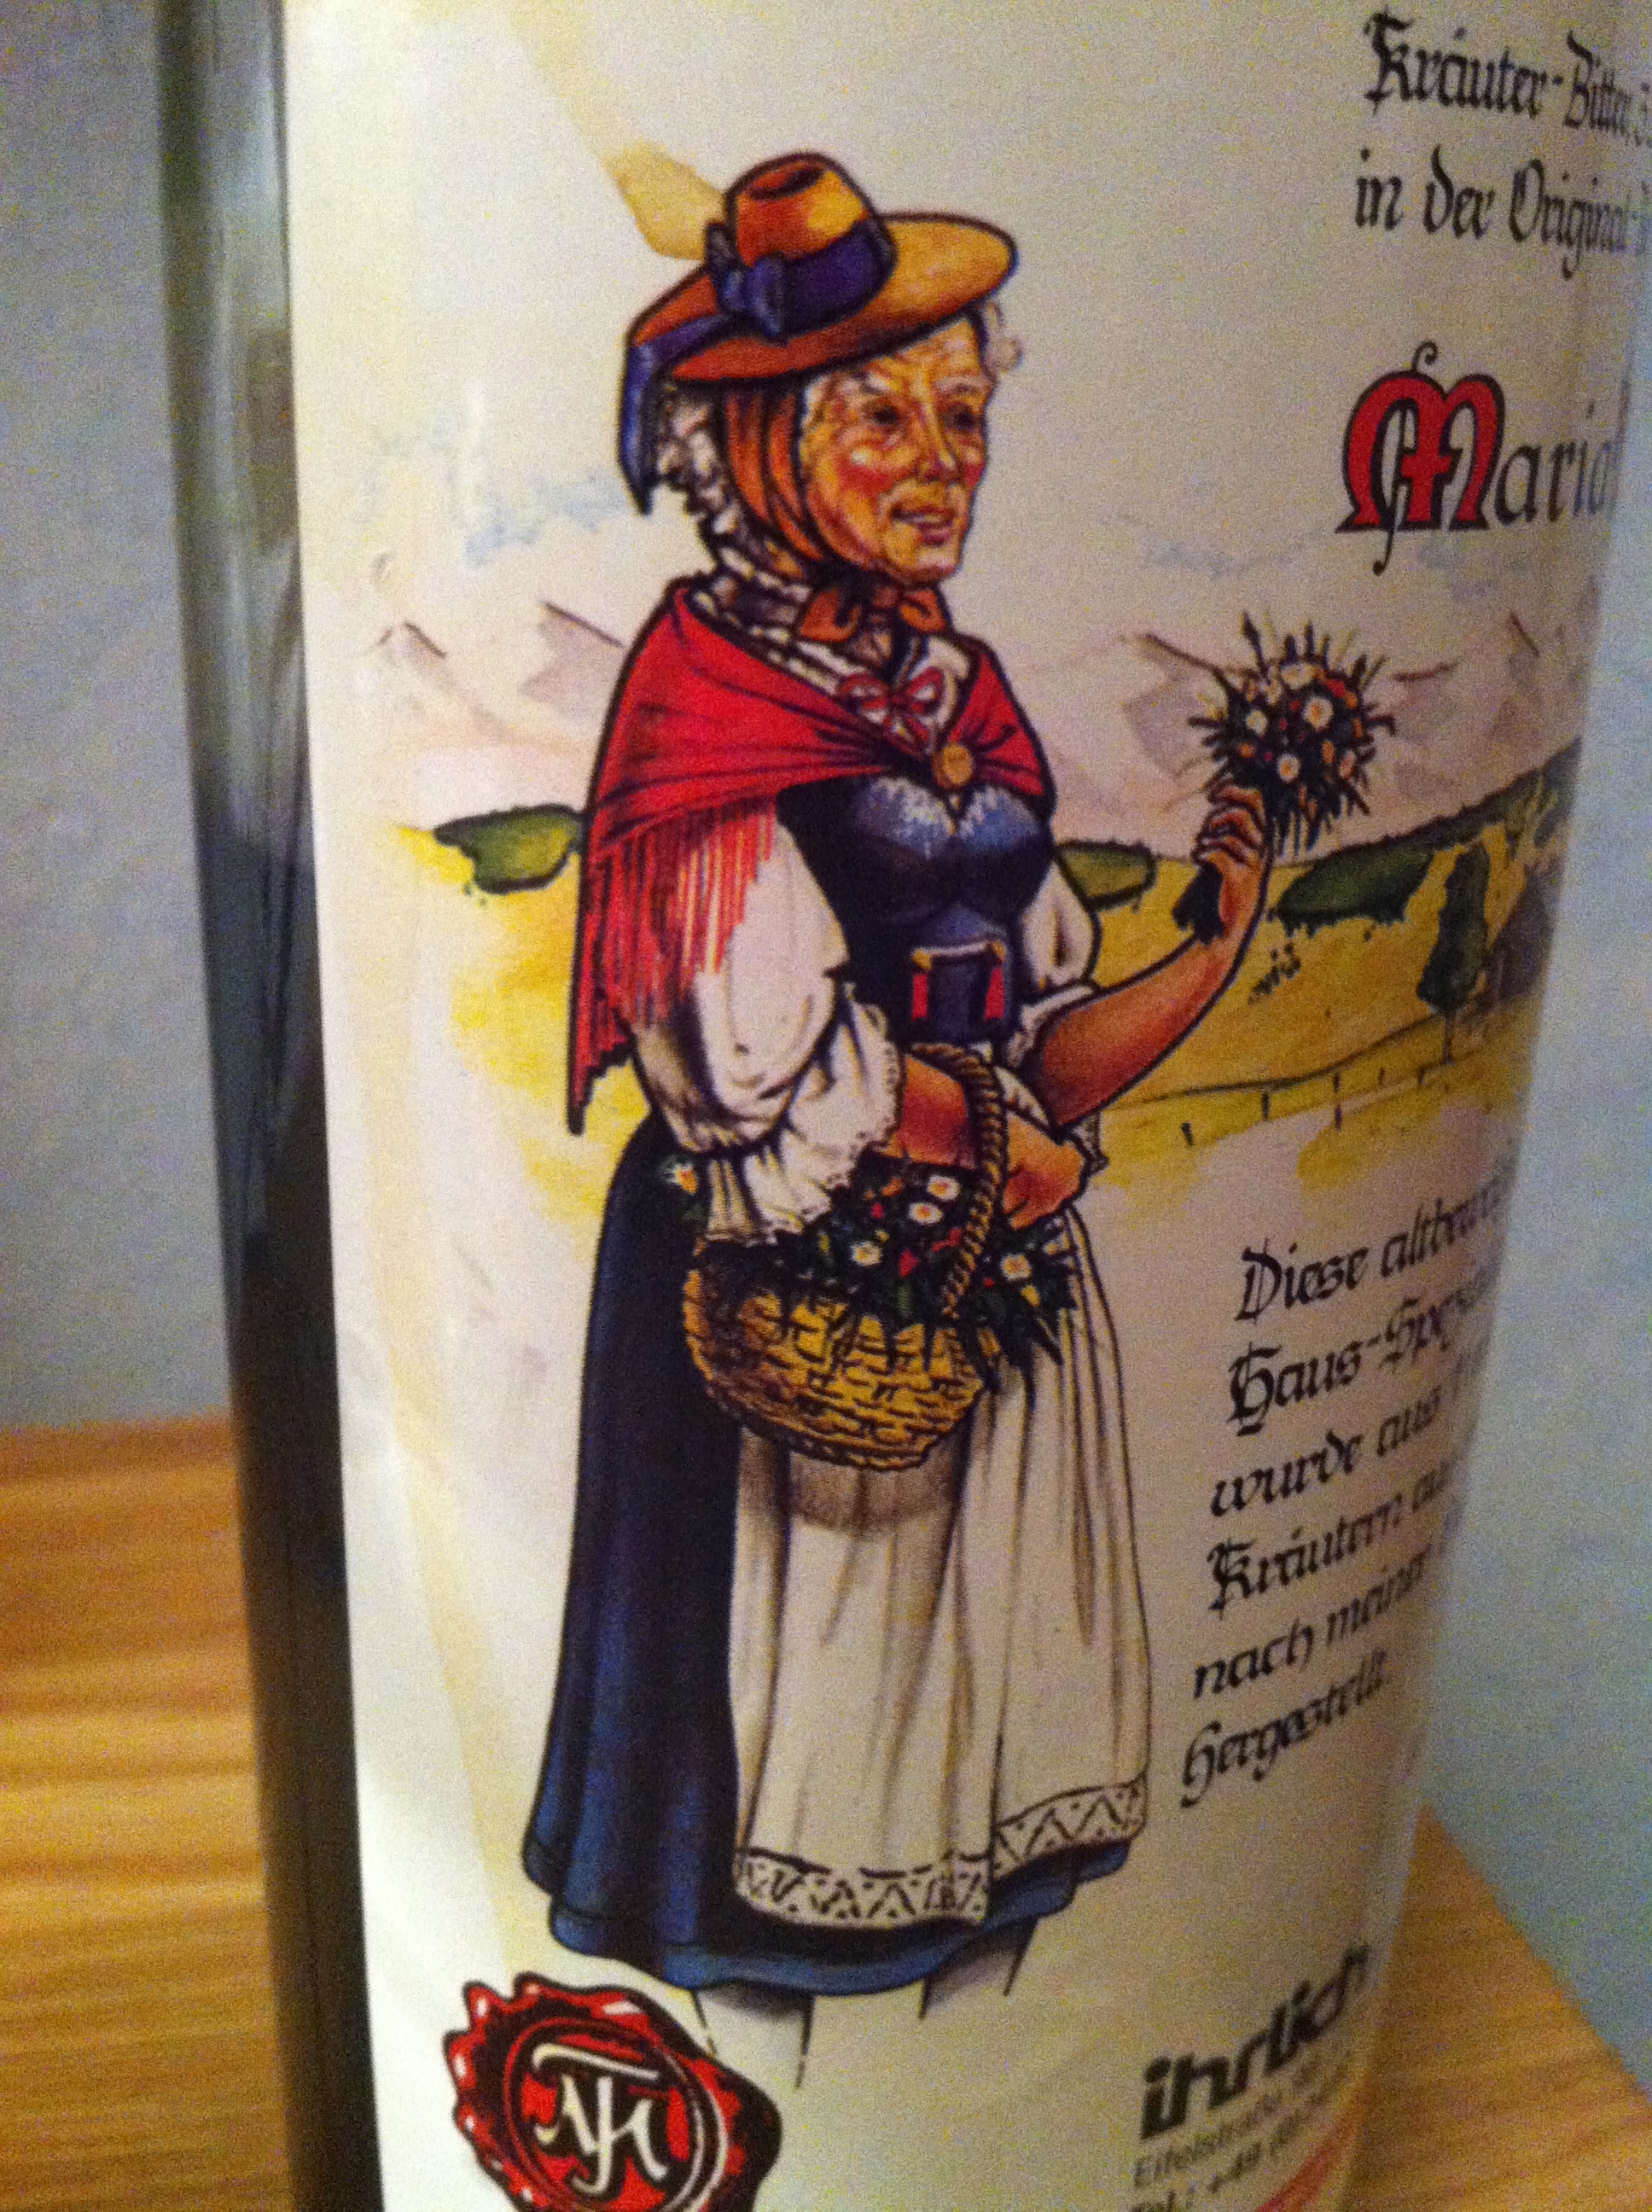 Maria Treben - Abbildung auf der Flasche